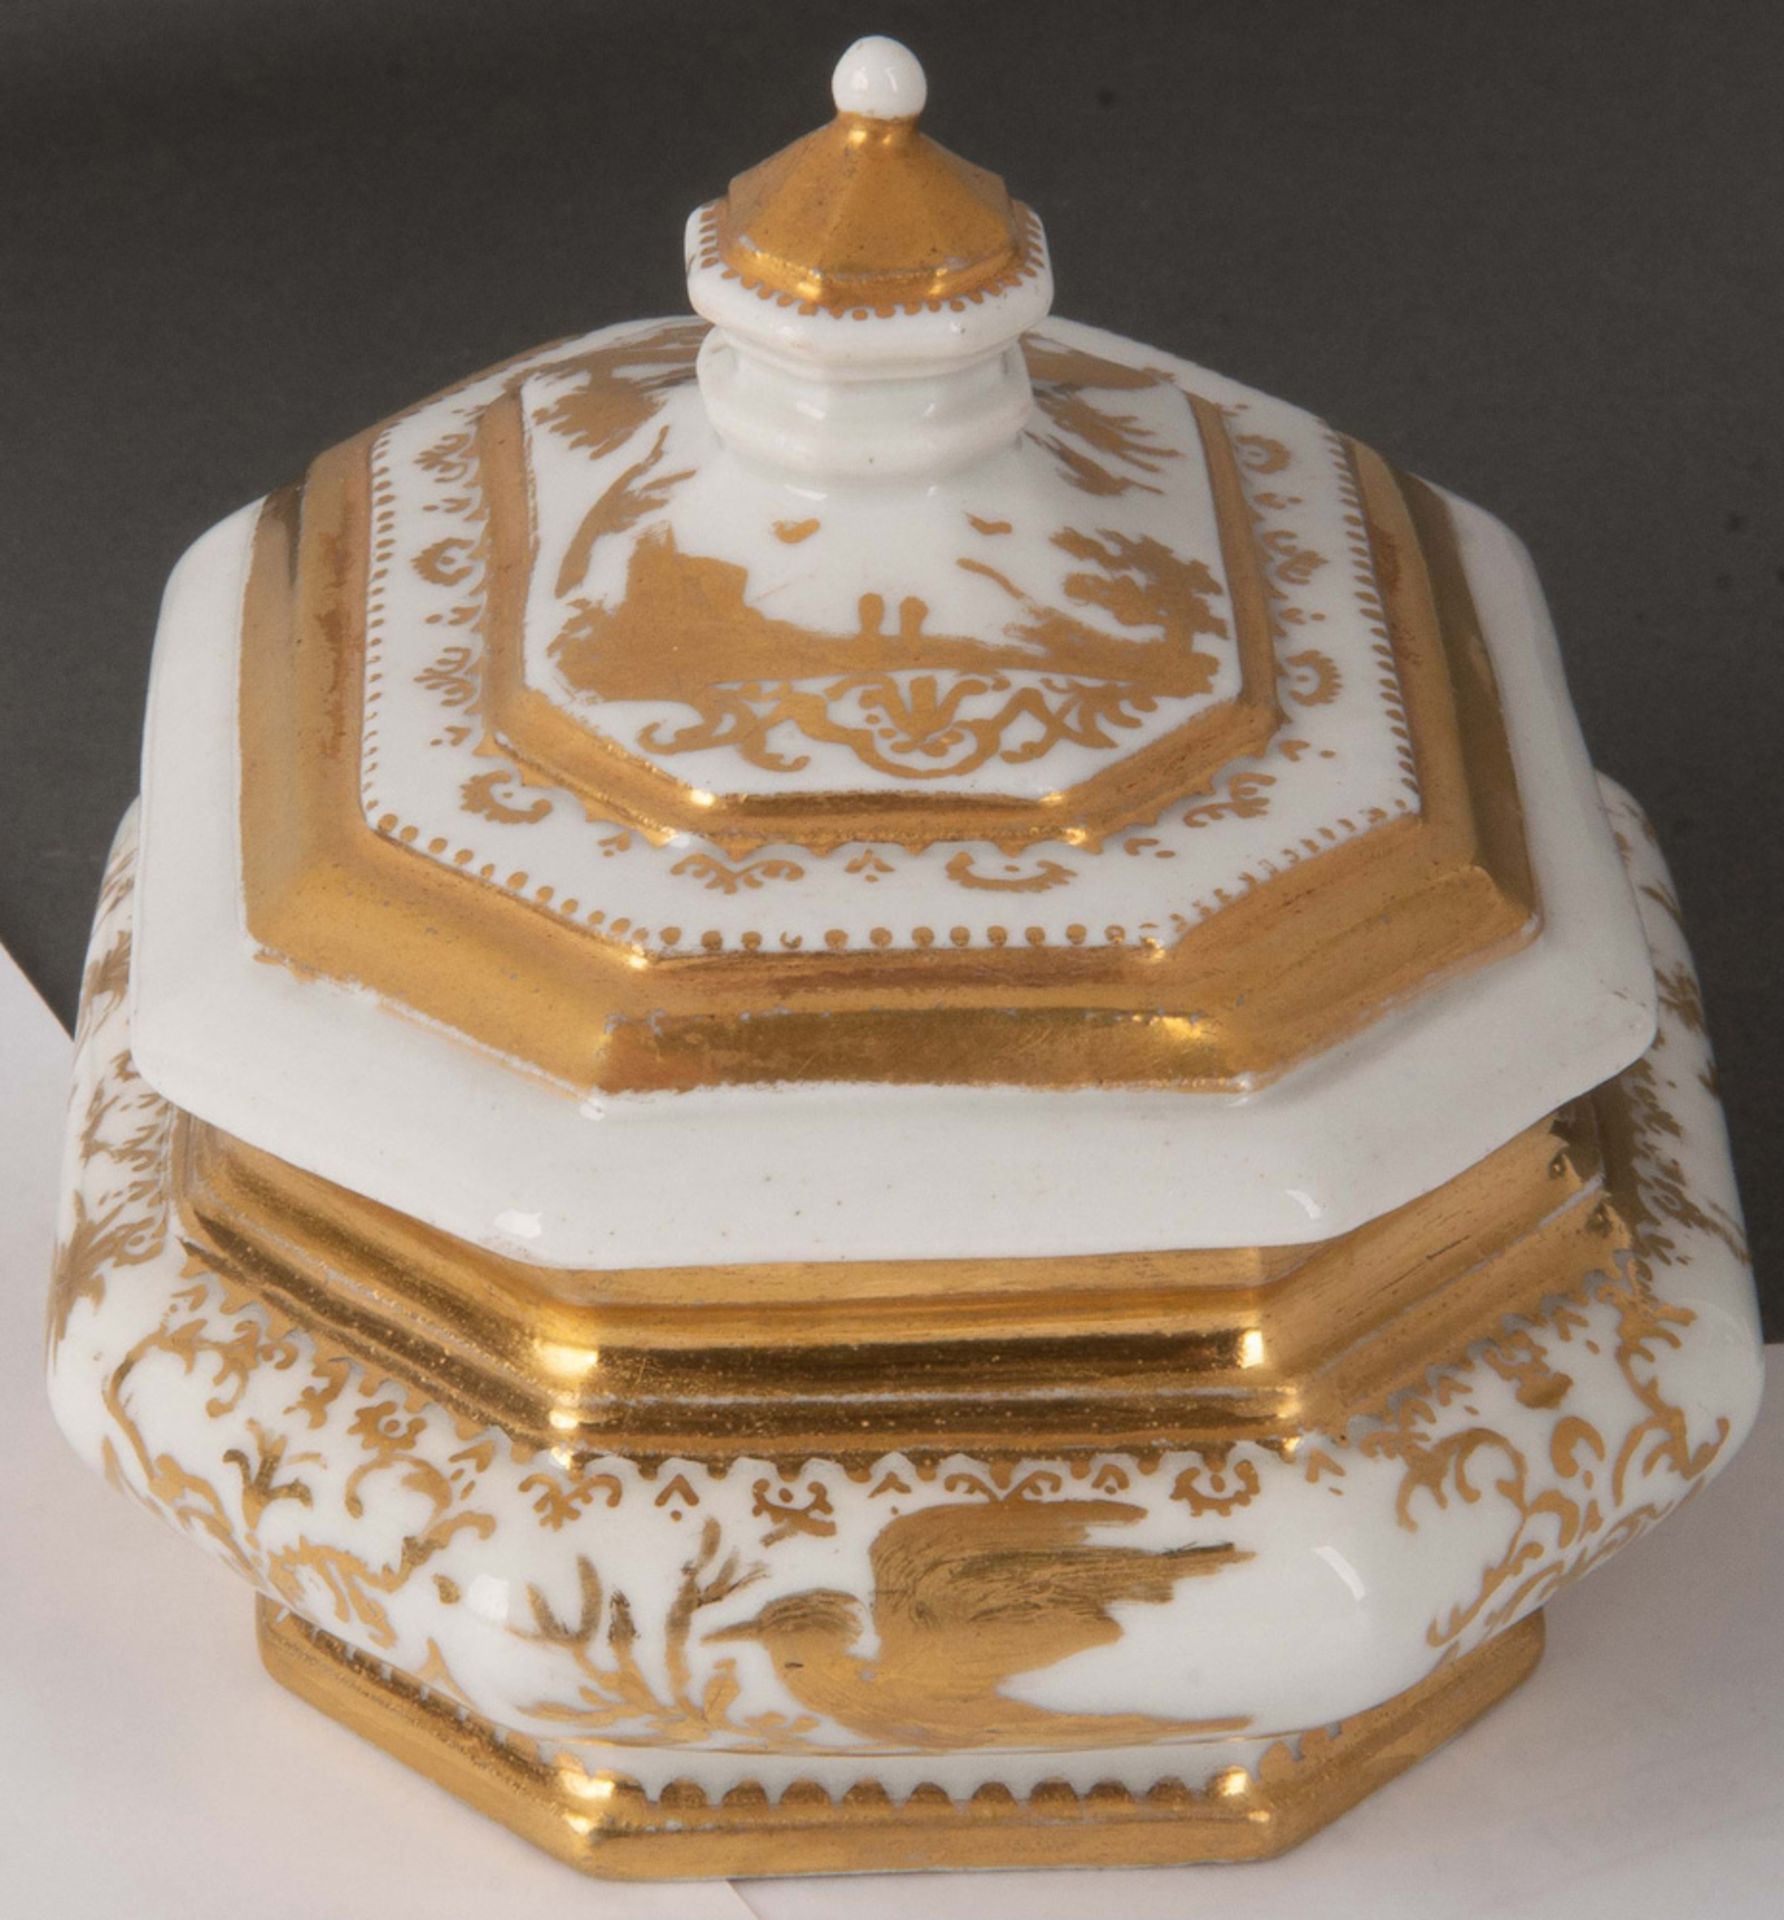 Zuckerdose Meissen 1725 Oktogonal gebaucht, sich nach unten verjüngend. Überstehender Deckel mit - Bild 2 aus 2